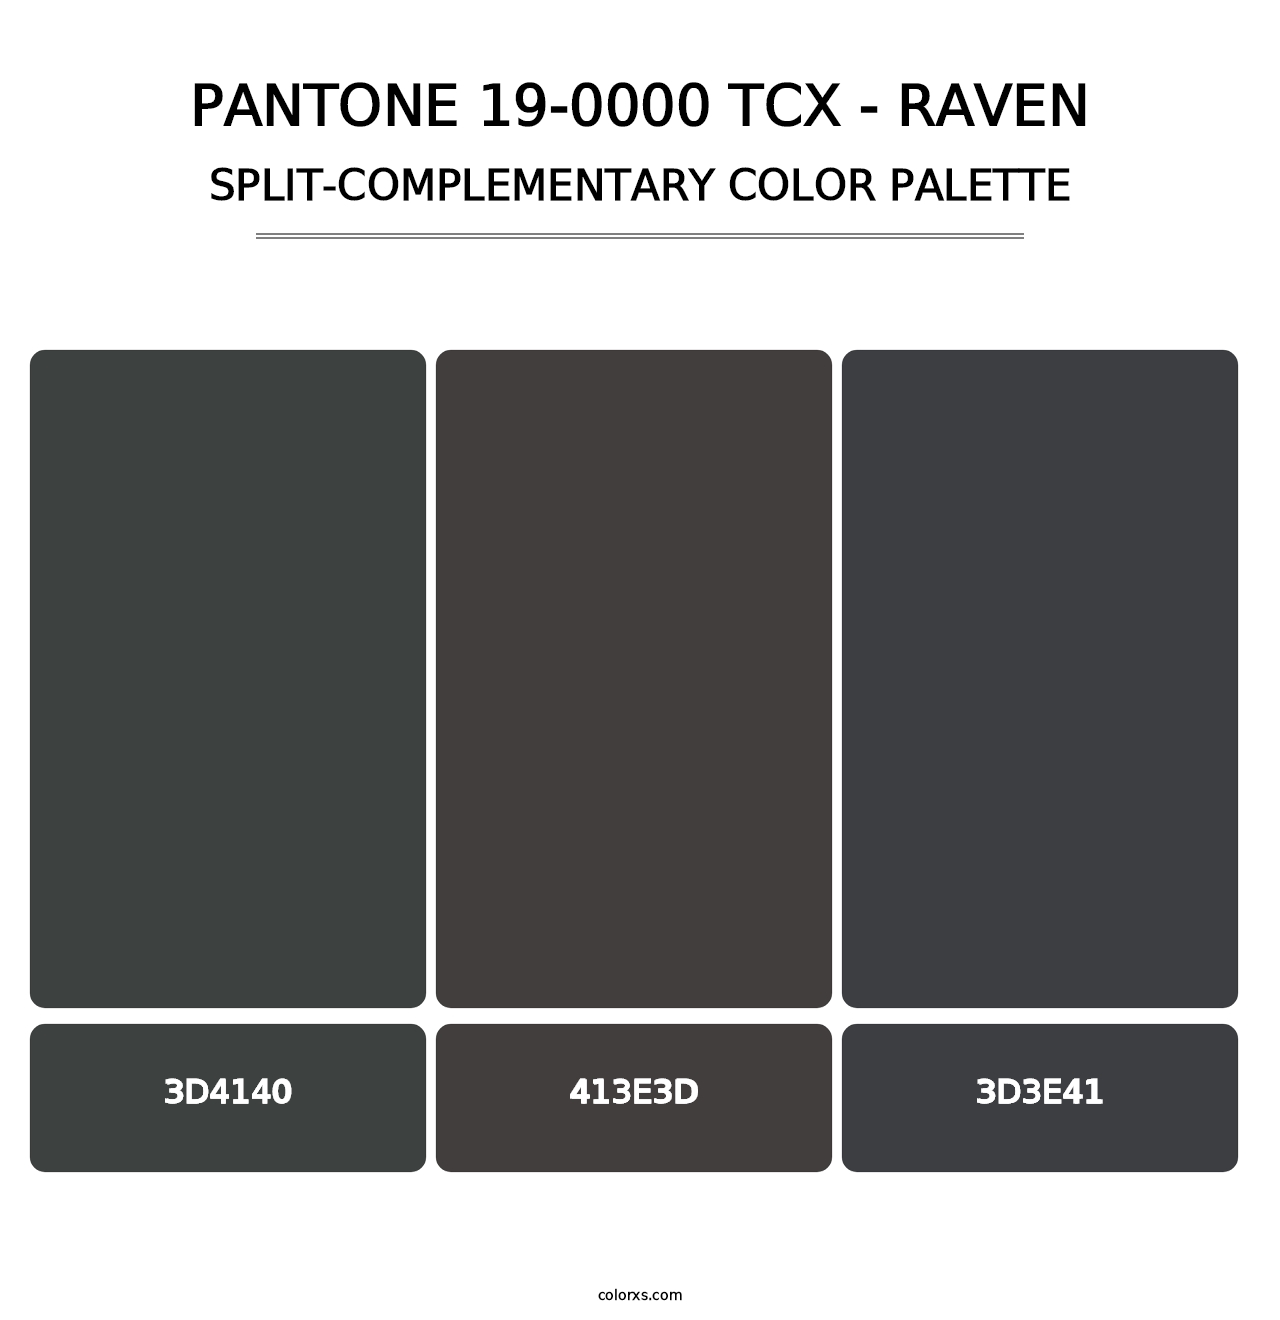 PANTONE 19-0000 TCX - Raven - Split-Complementary Color Palette